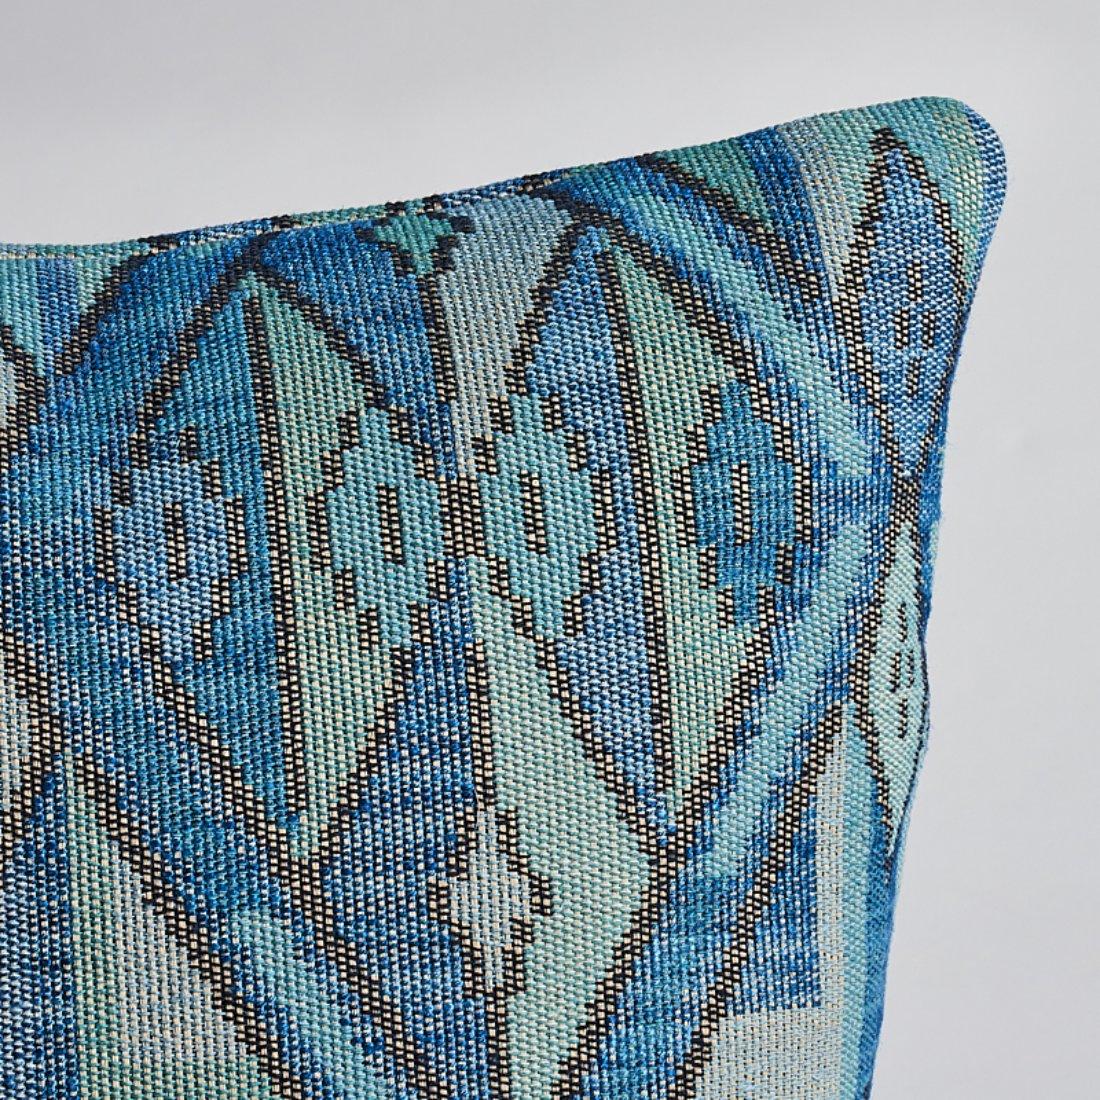 Ce coussin présente le Kuzma avec une finition en forme de couteau. Réalisé dans un tissage plat de style kilim, Kuzma est une réinterprétation colorée d'un tapis ancien, dont les géométries nettes sont adoucies par la qualité imparfaite et rustique